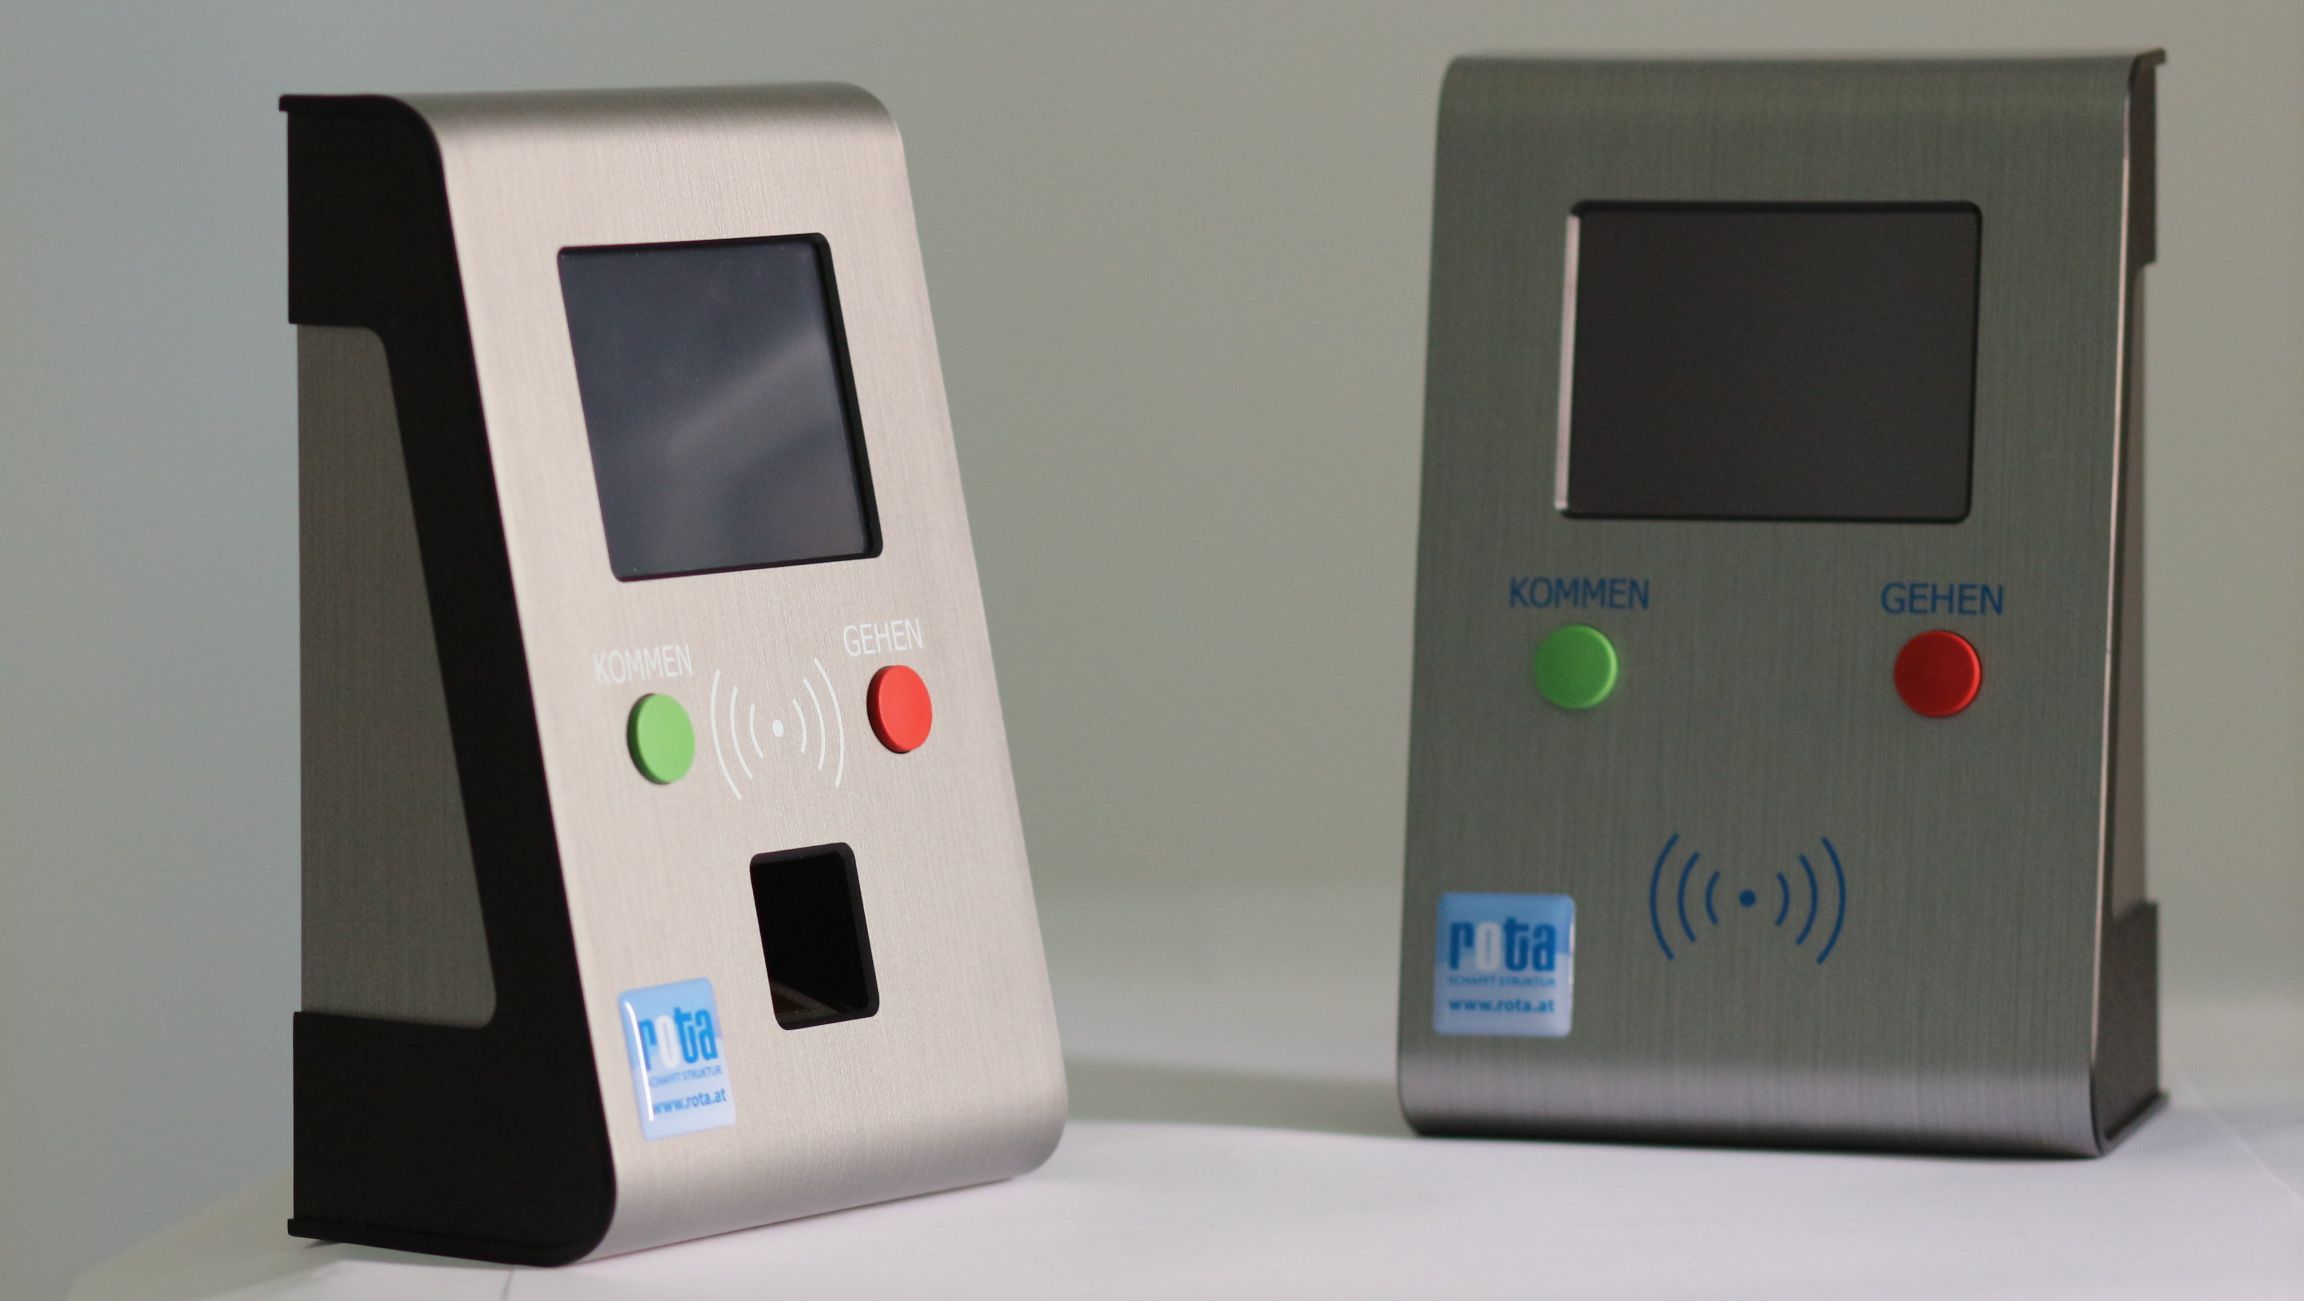 Zwei Terminals für die Arbeitszeiterfassung mit Chip und Fingerprint Identifikation